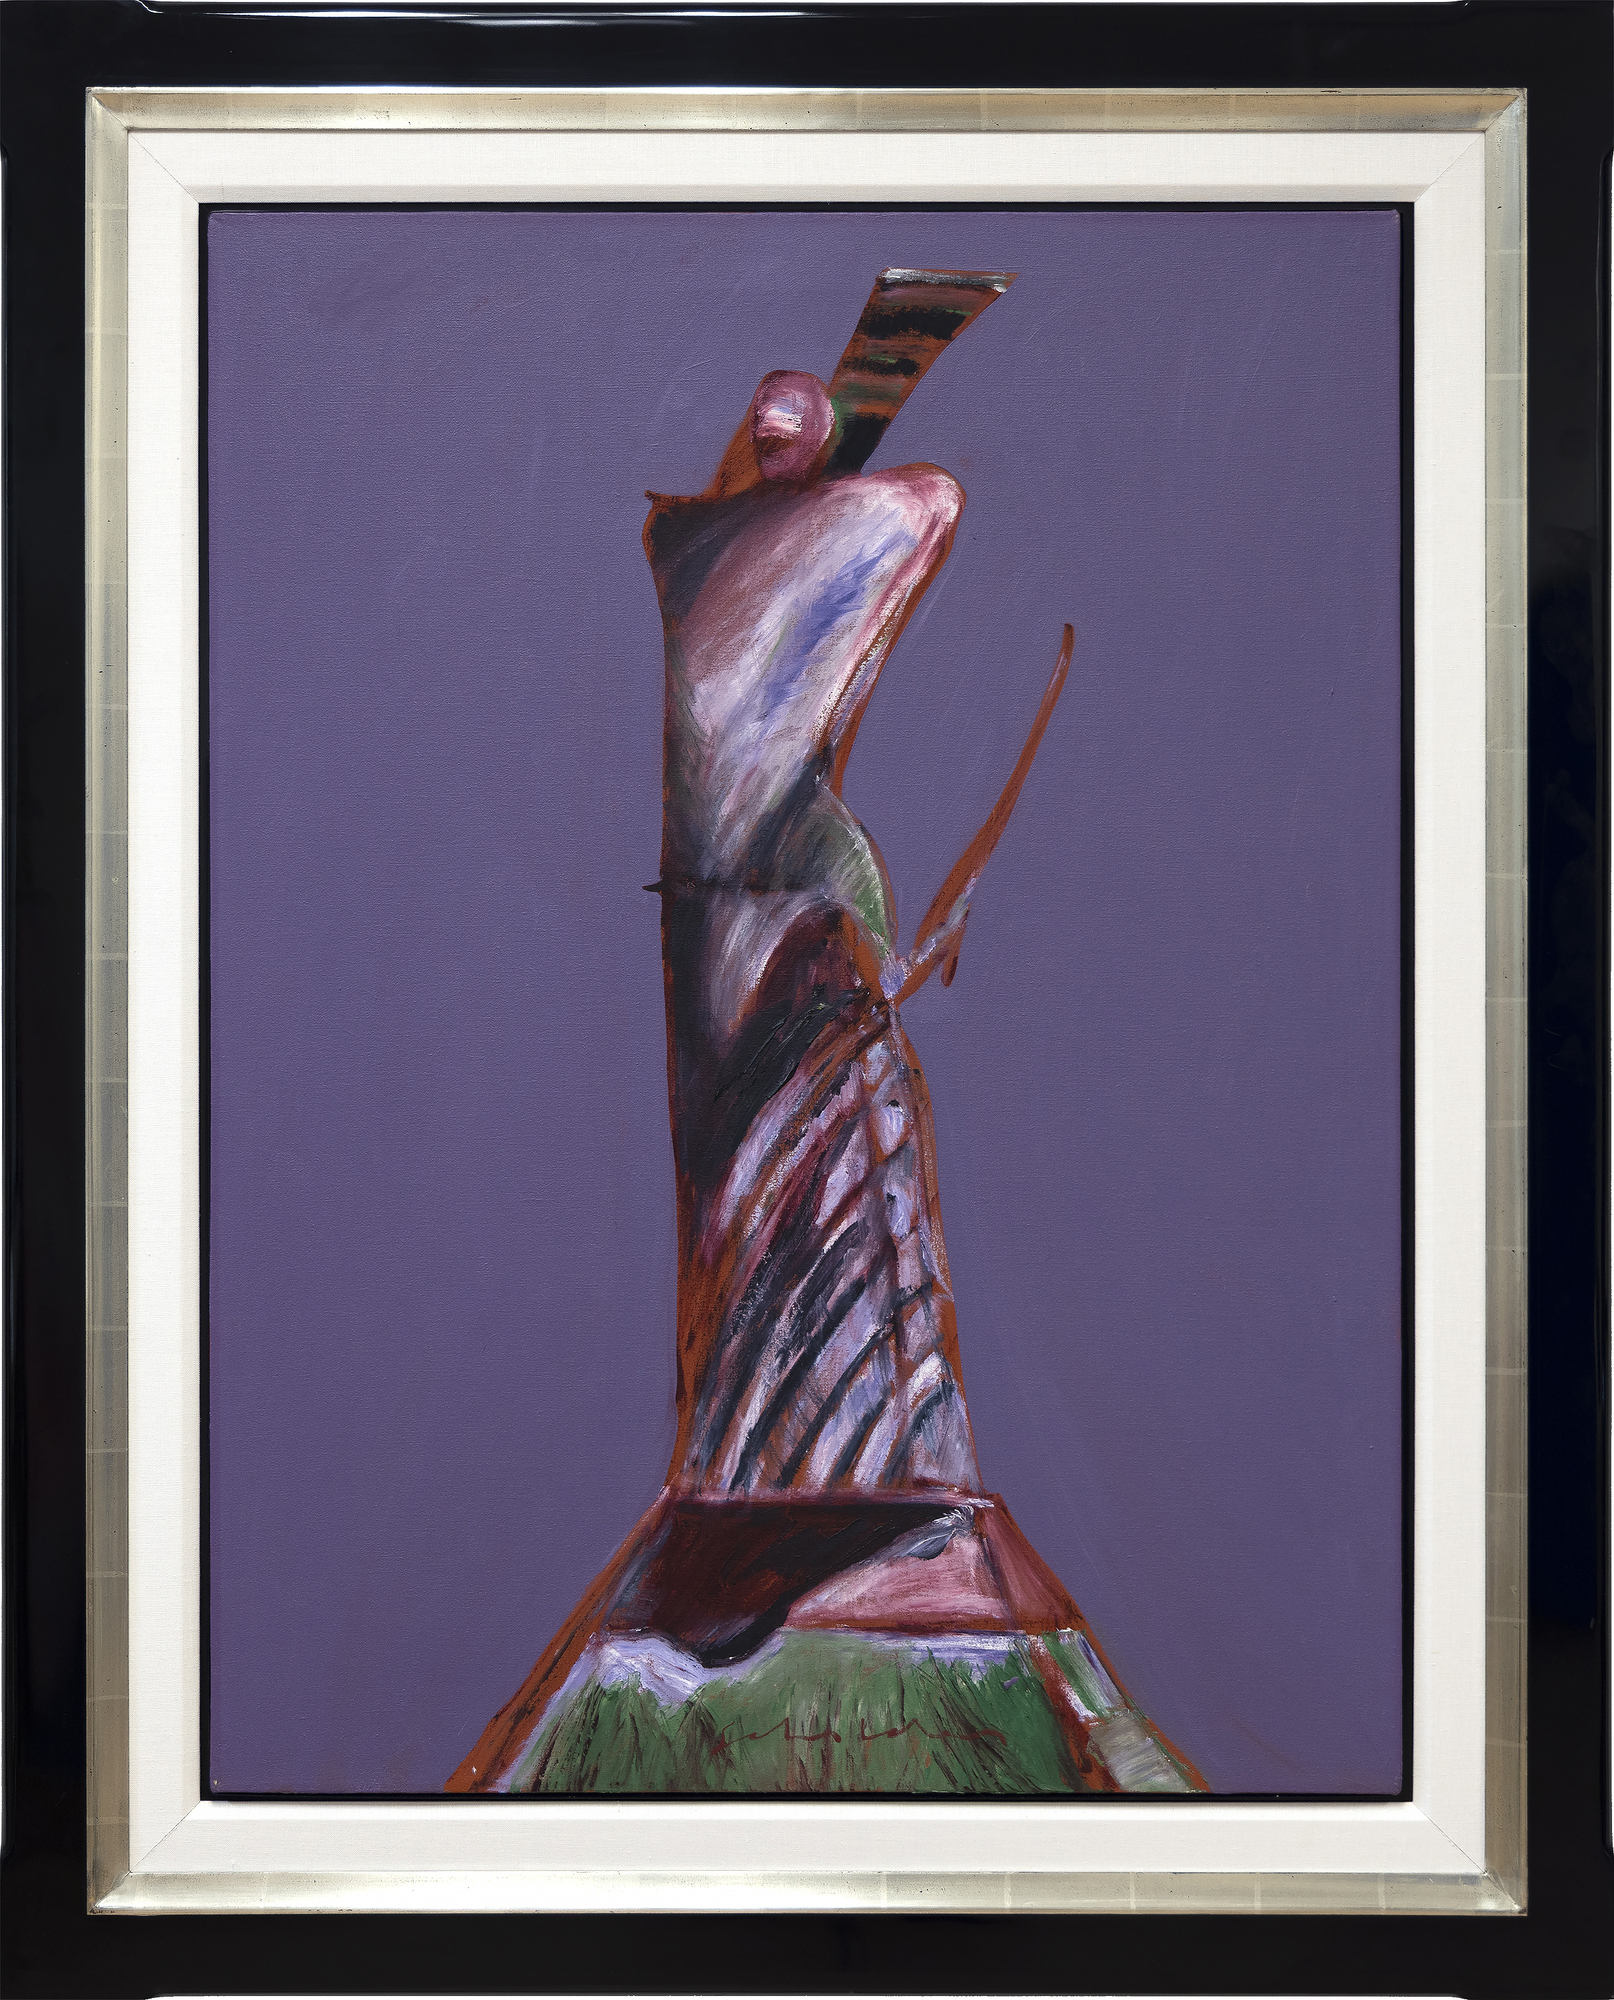 فريتز سهولدر - صورة أمريكية رقم 14 - زيت على قماش - 40 × 30 بوصة.